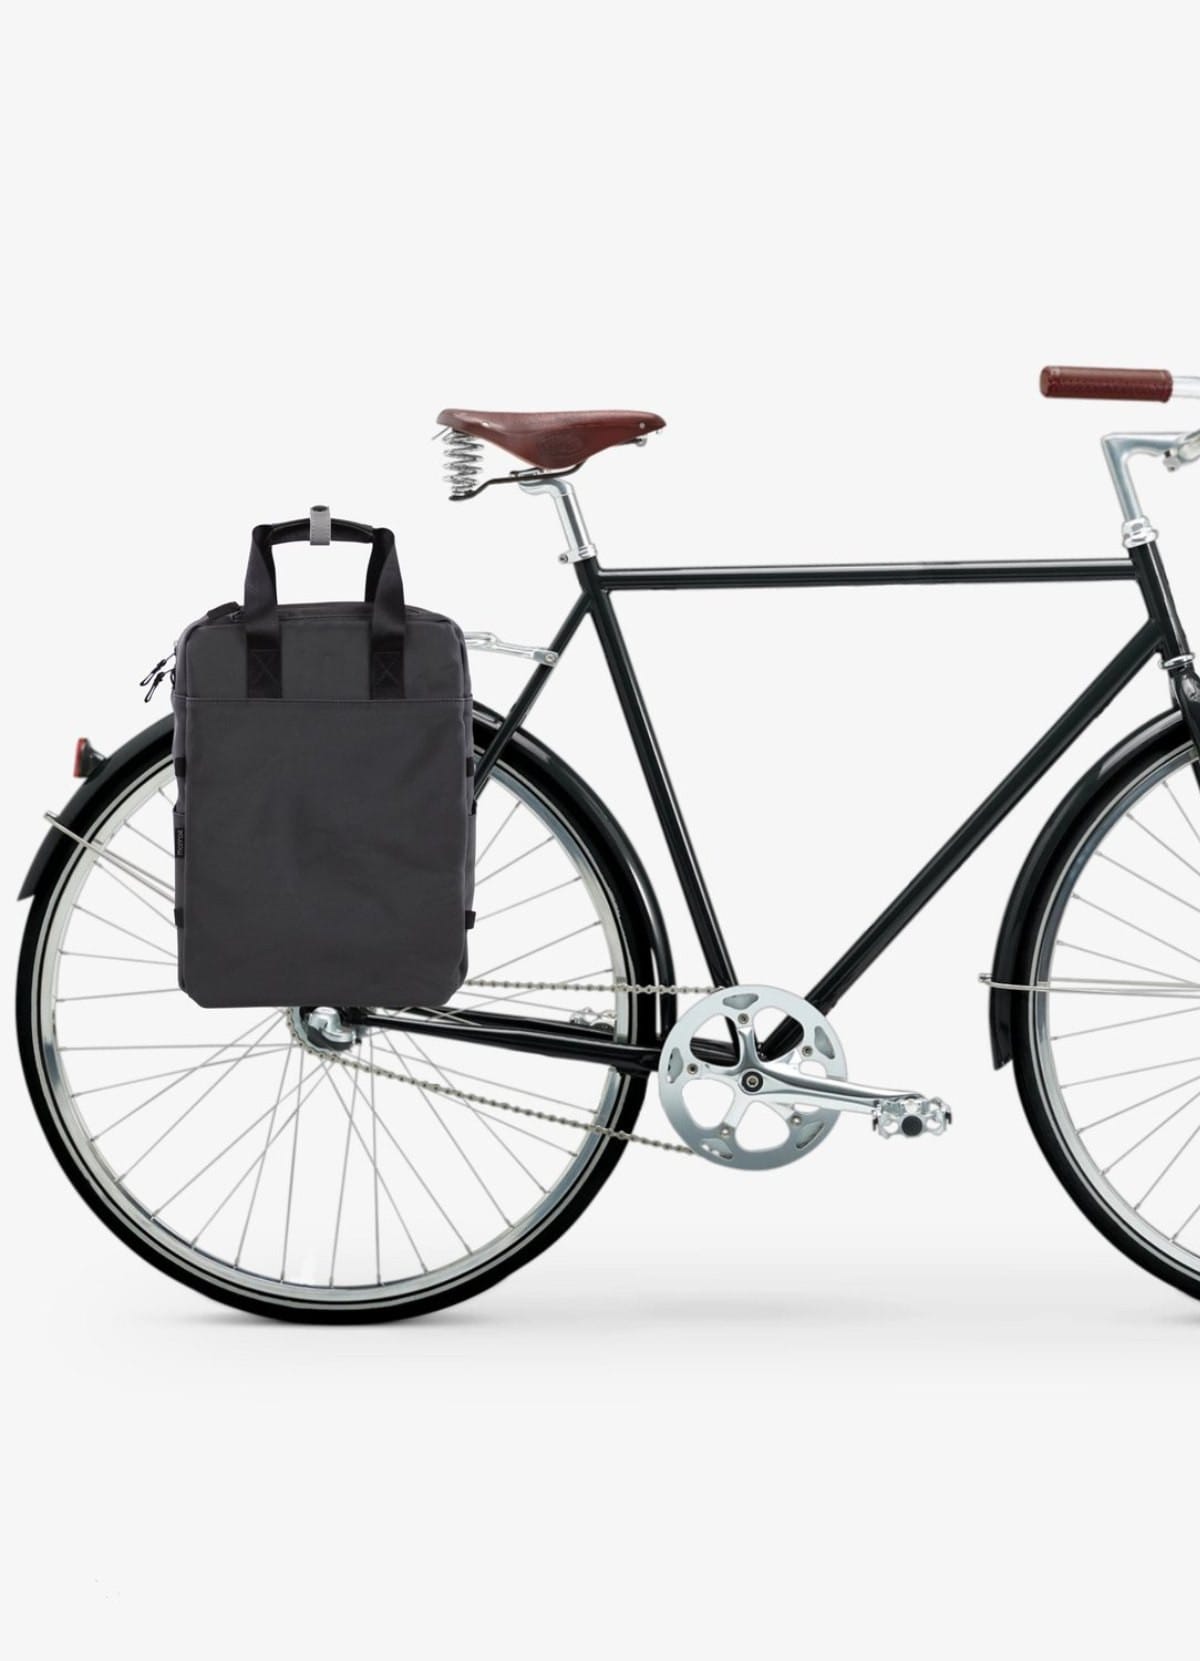 Porte-bagages Arrière Pelago Commuter en noir pour vélo